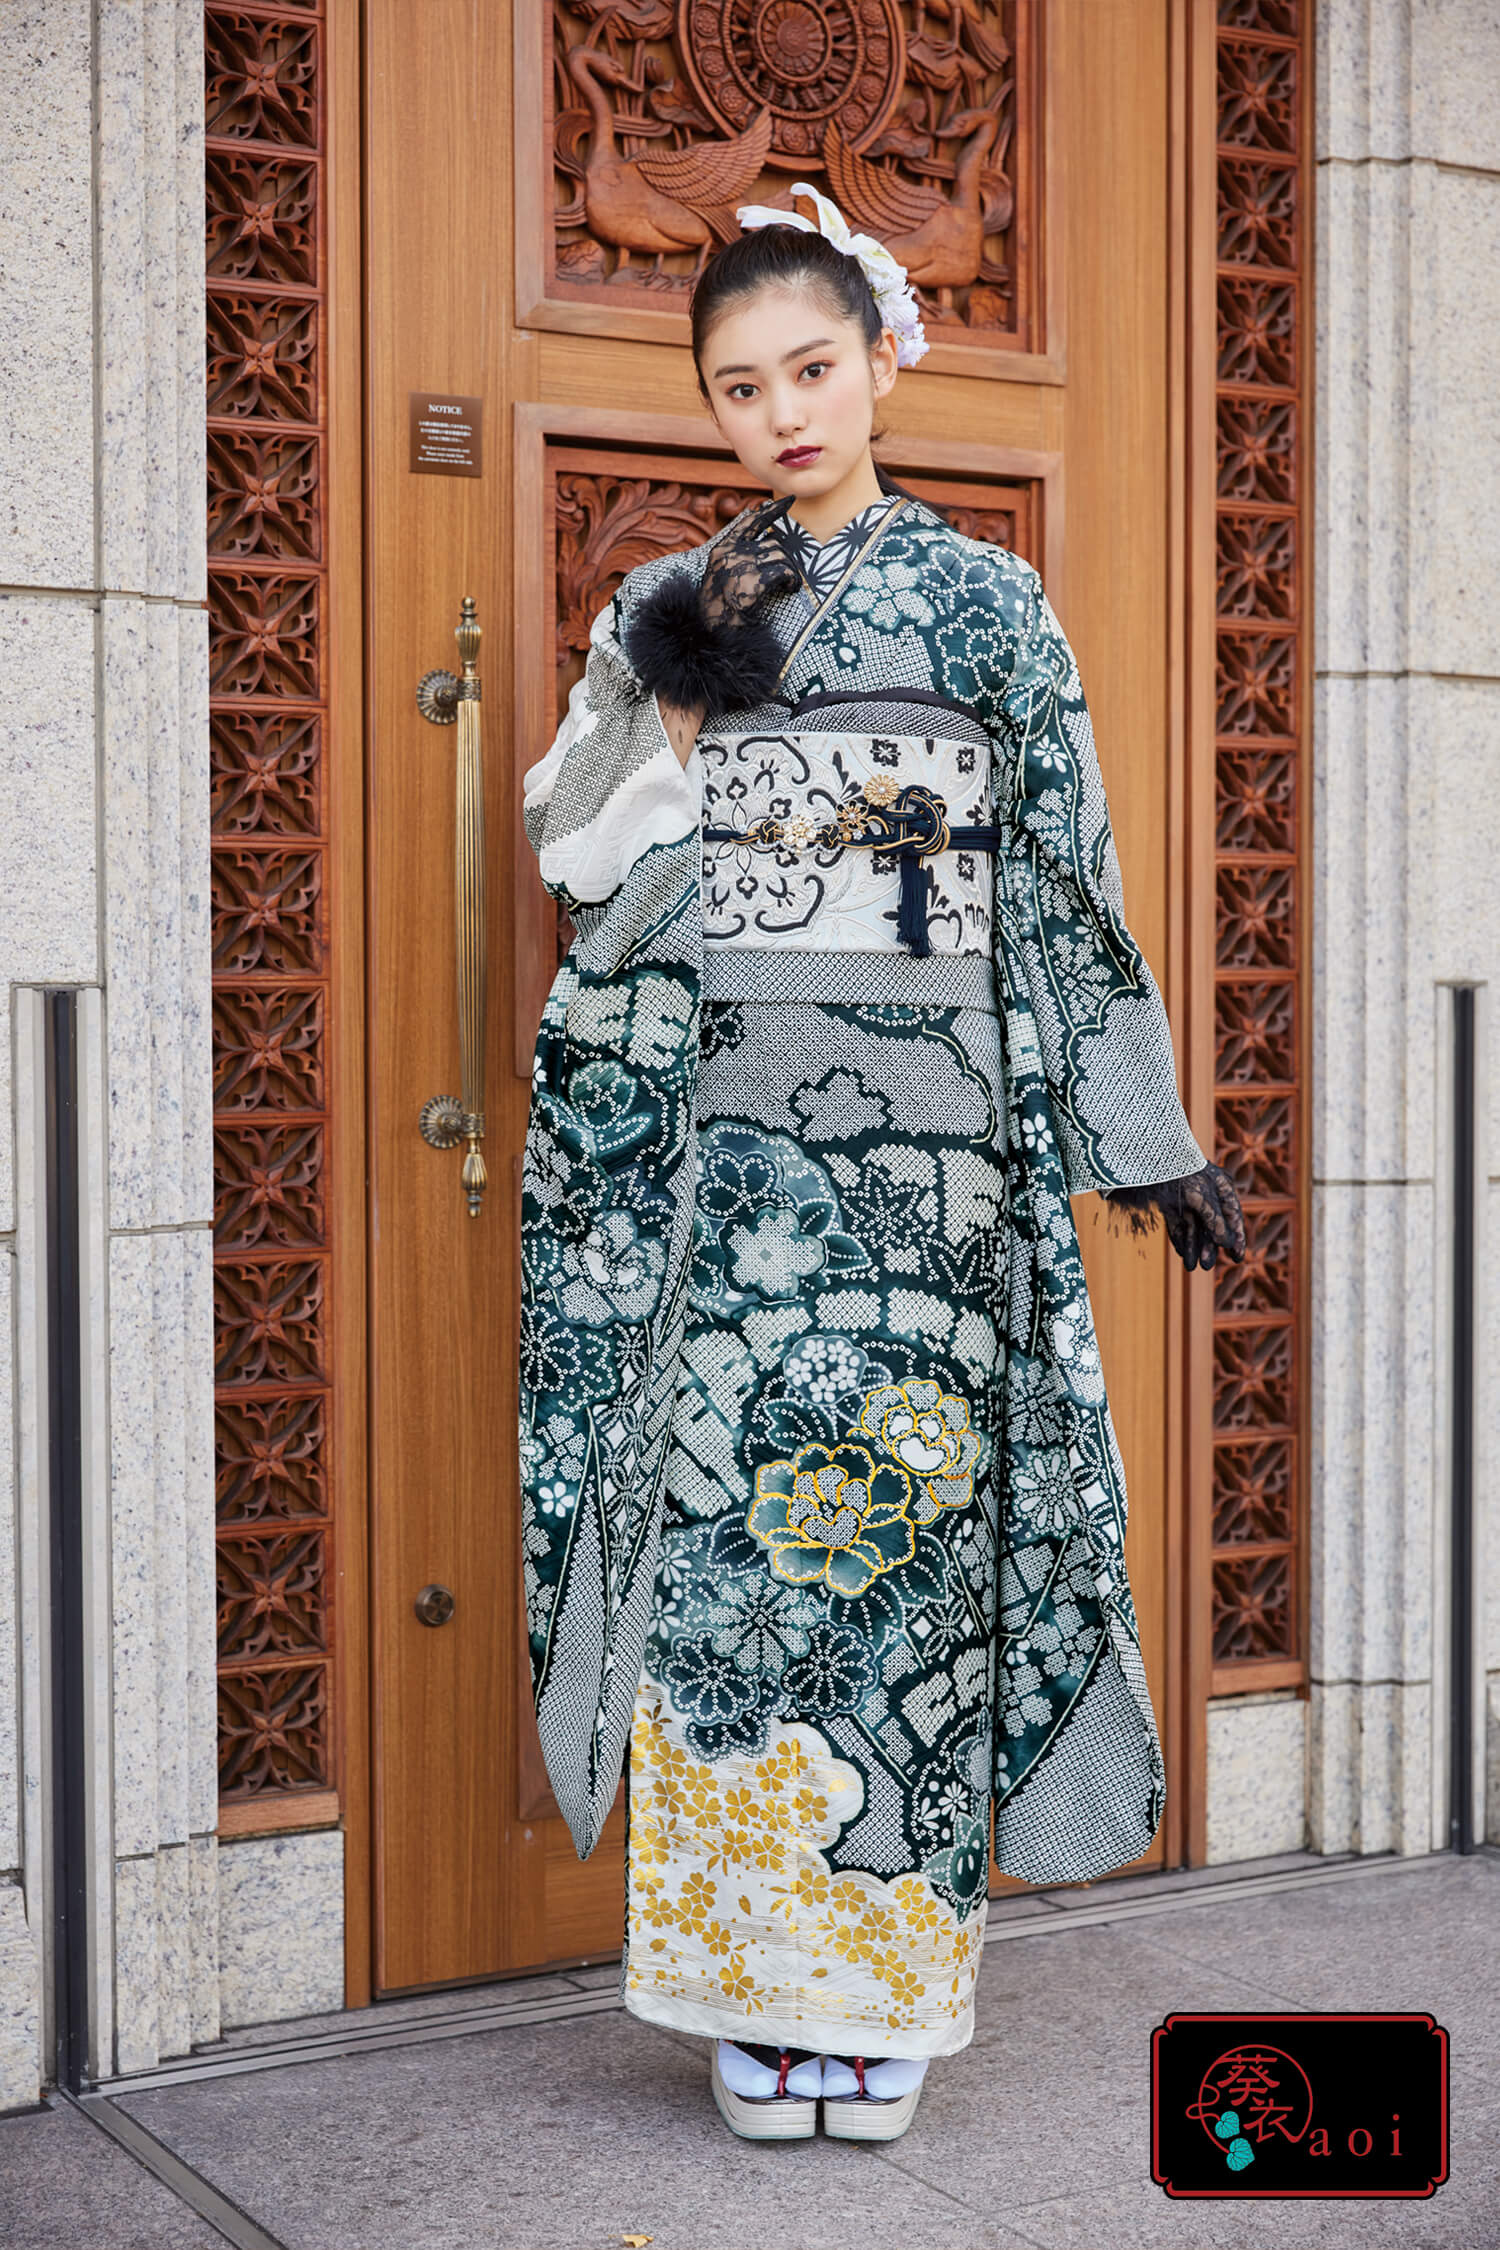 葵衣 | 京都、大阪、兵庫の振袖・袴などの着物レンタル、購入。京むらさき